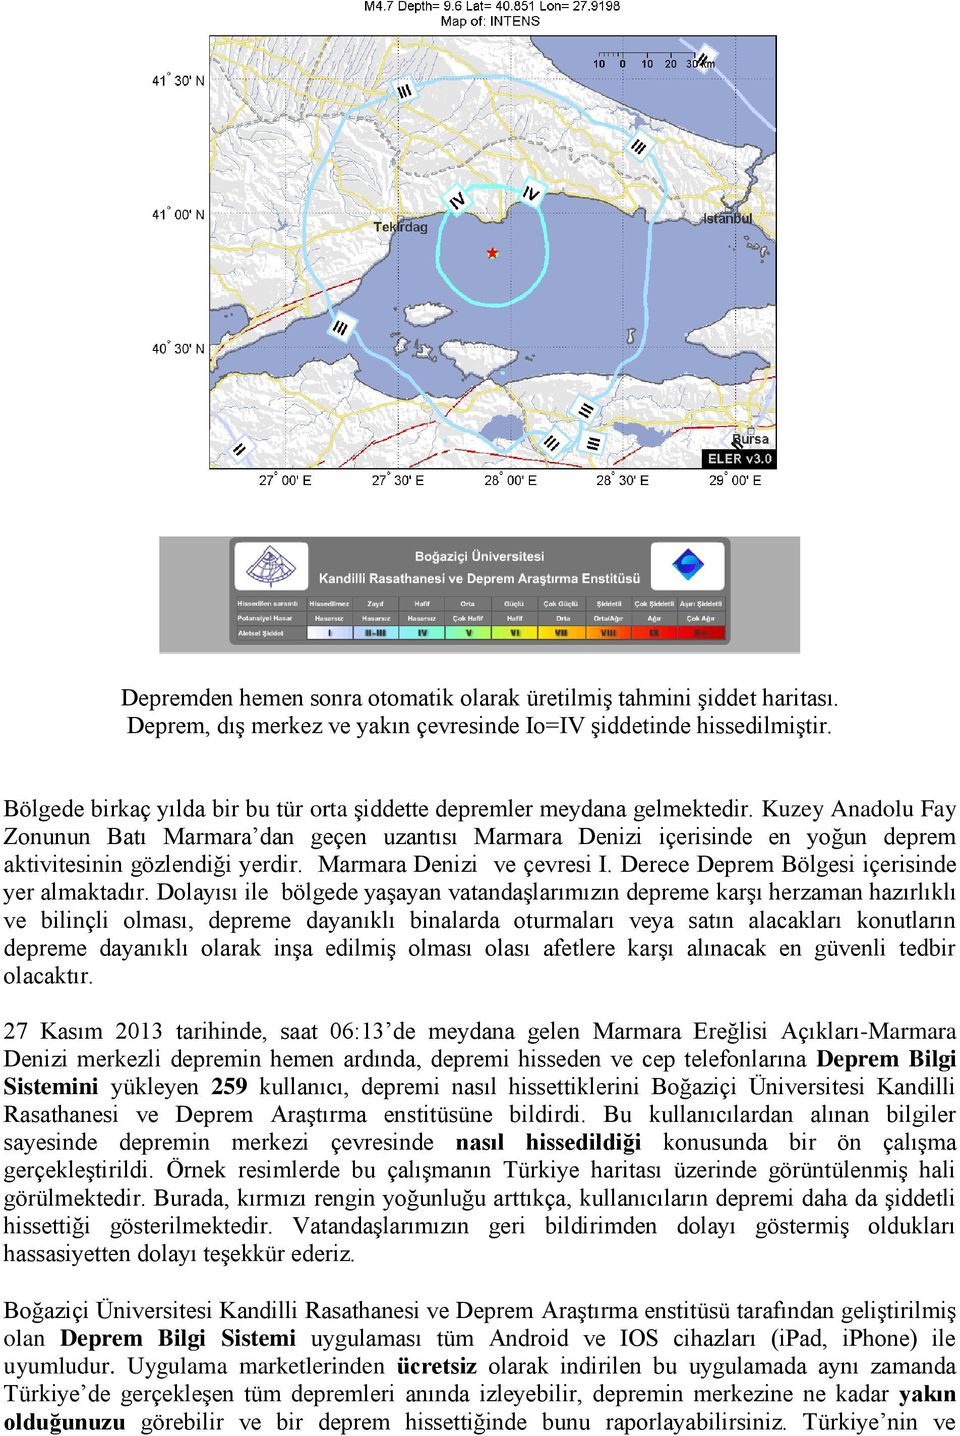 Kuzey Anadolu Fay Zonunun Batı Marmara dan geçen uzantısı Marmara Denizi içerisinde en yoğun deprem aktivitesinin gözlendiği yerdir. Marmara Denizi ve çevresi I.